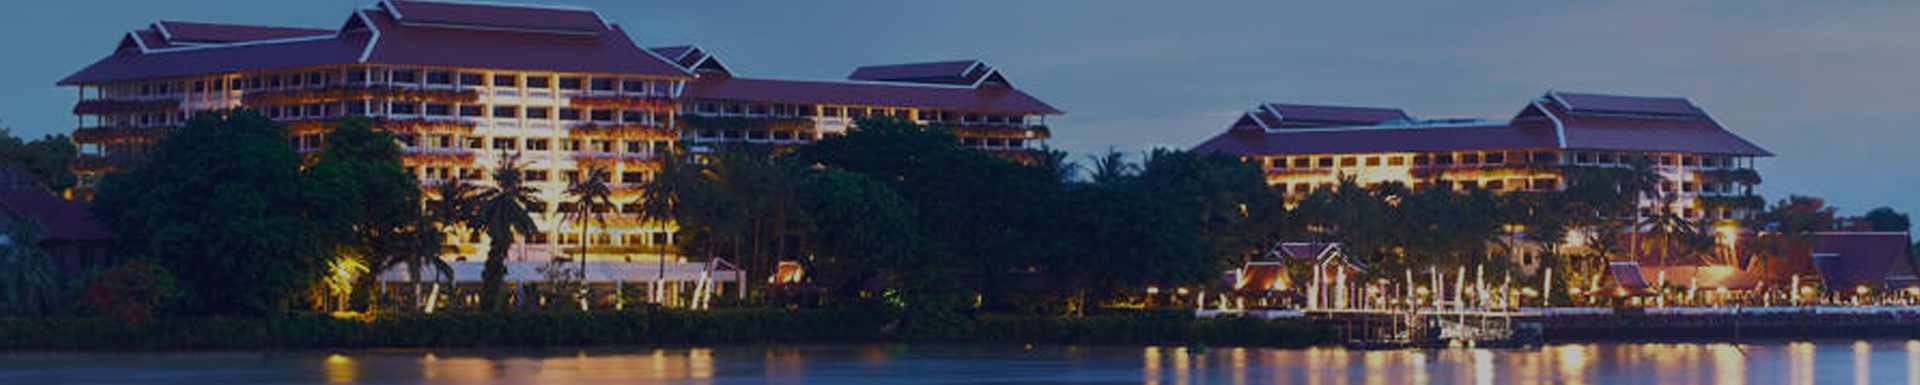 Anantara Vacation Club Anantara Riverside